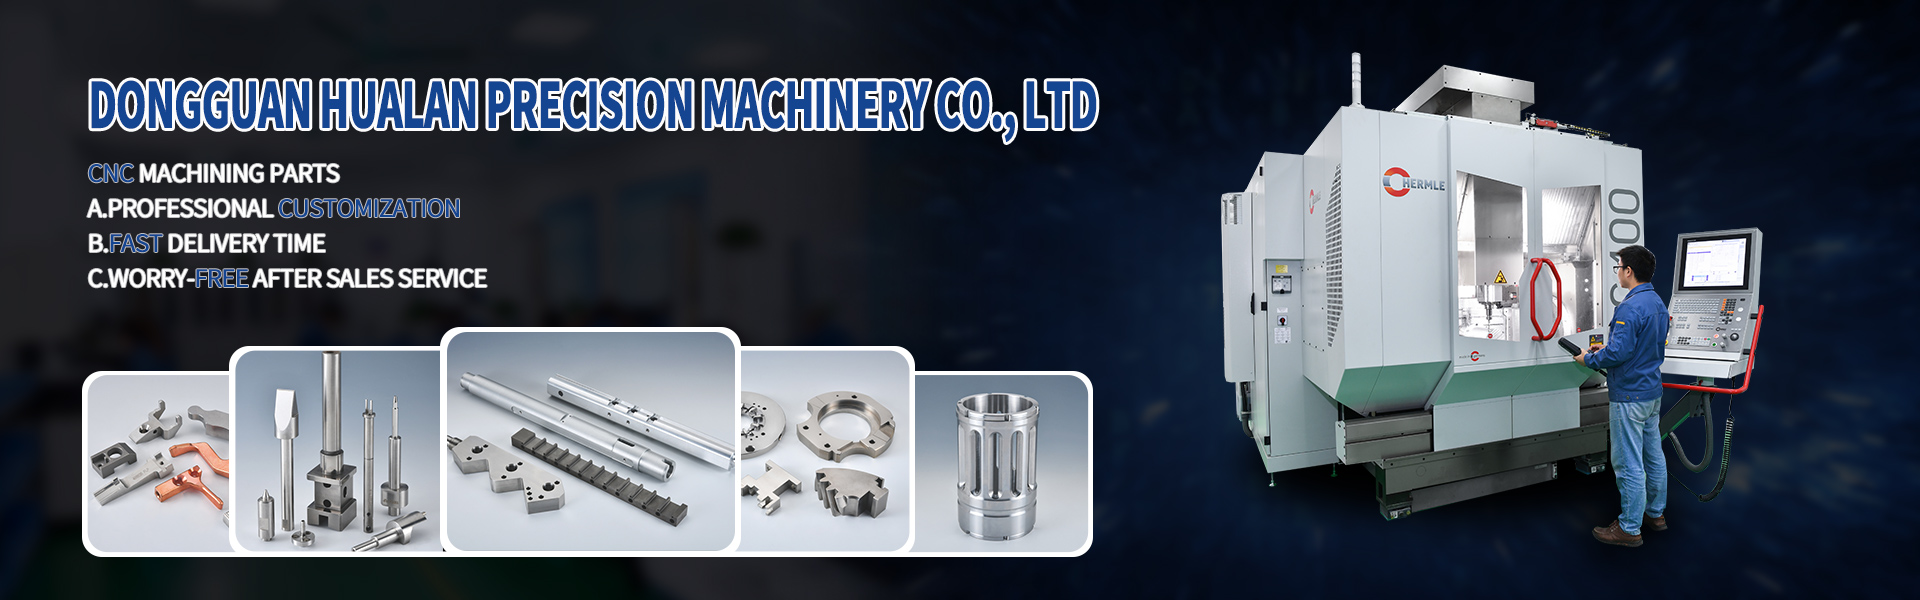 Części obróbki CNC, turing i frezowanie, cięcie linii,Dongguan Hualan Precision Machinery Co., LTD